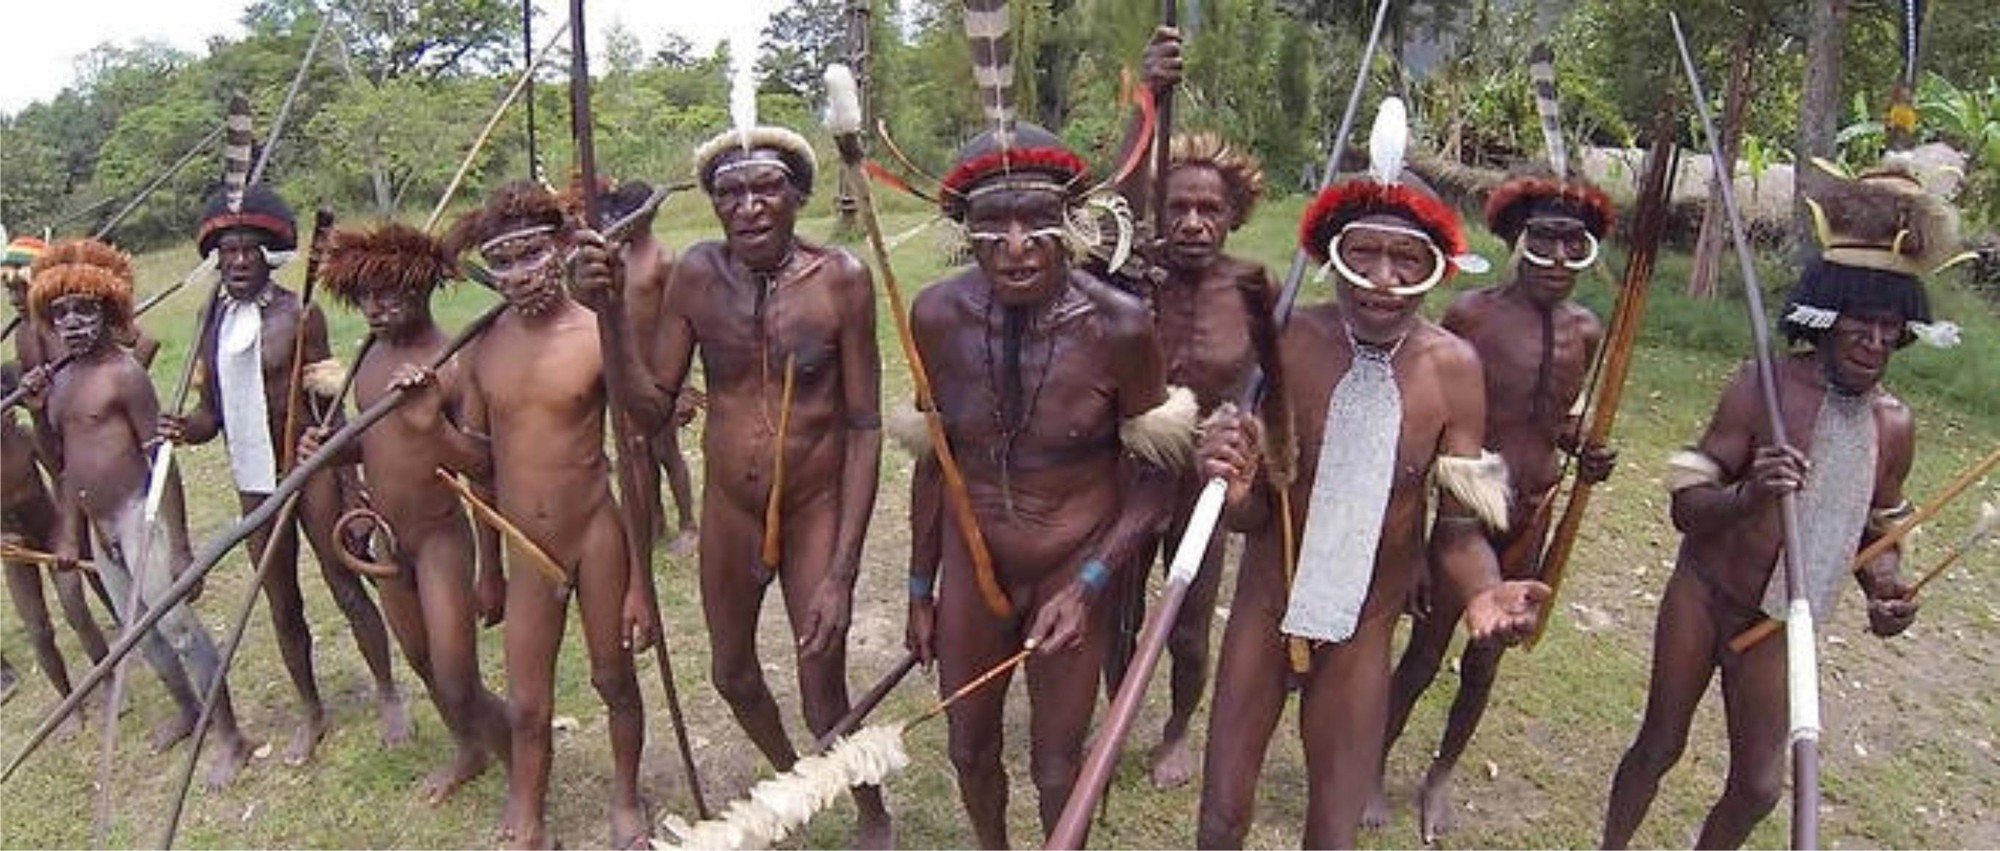 дикие племена с большими членами фото 66